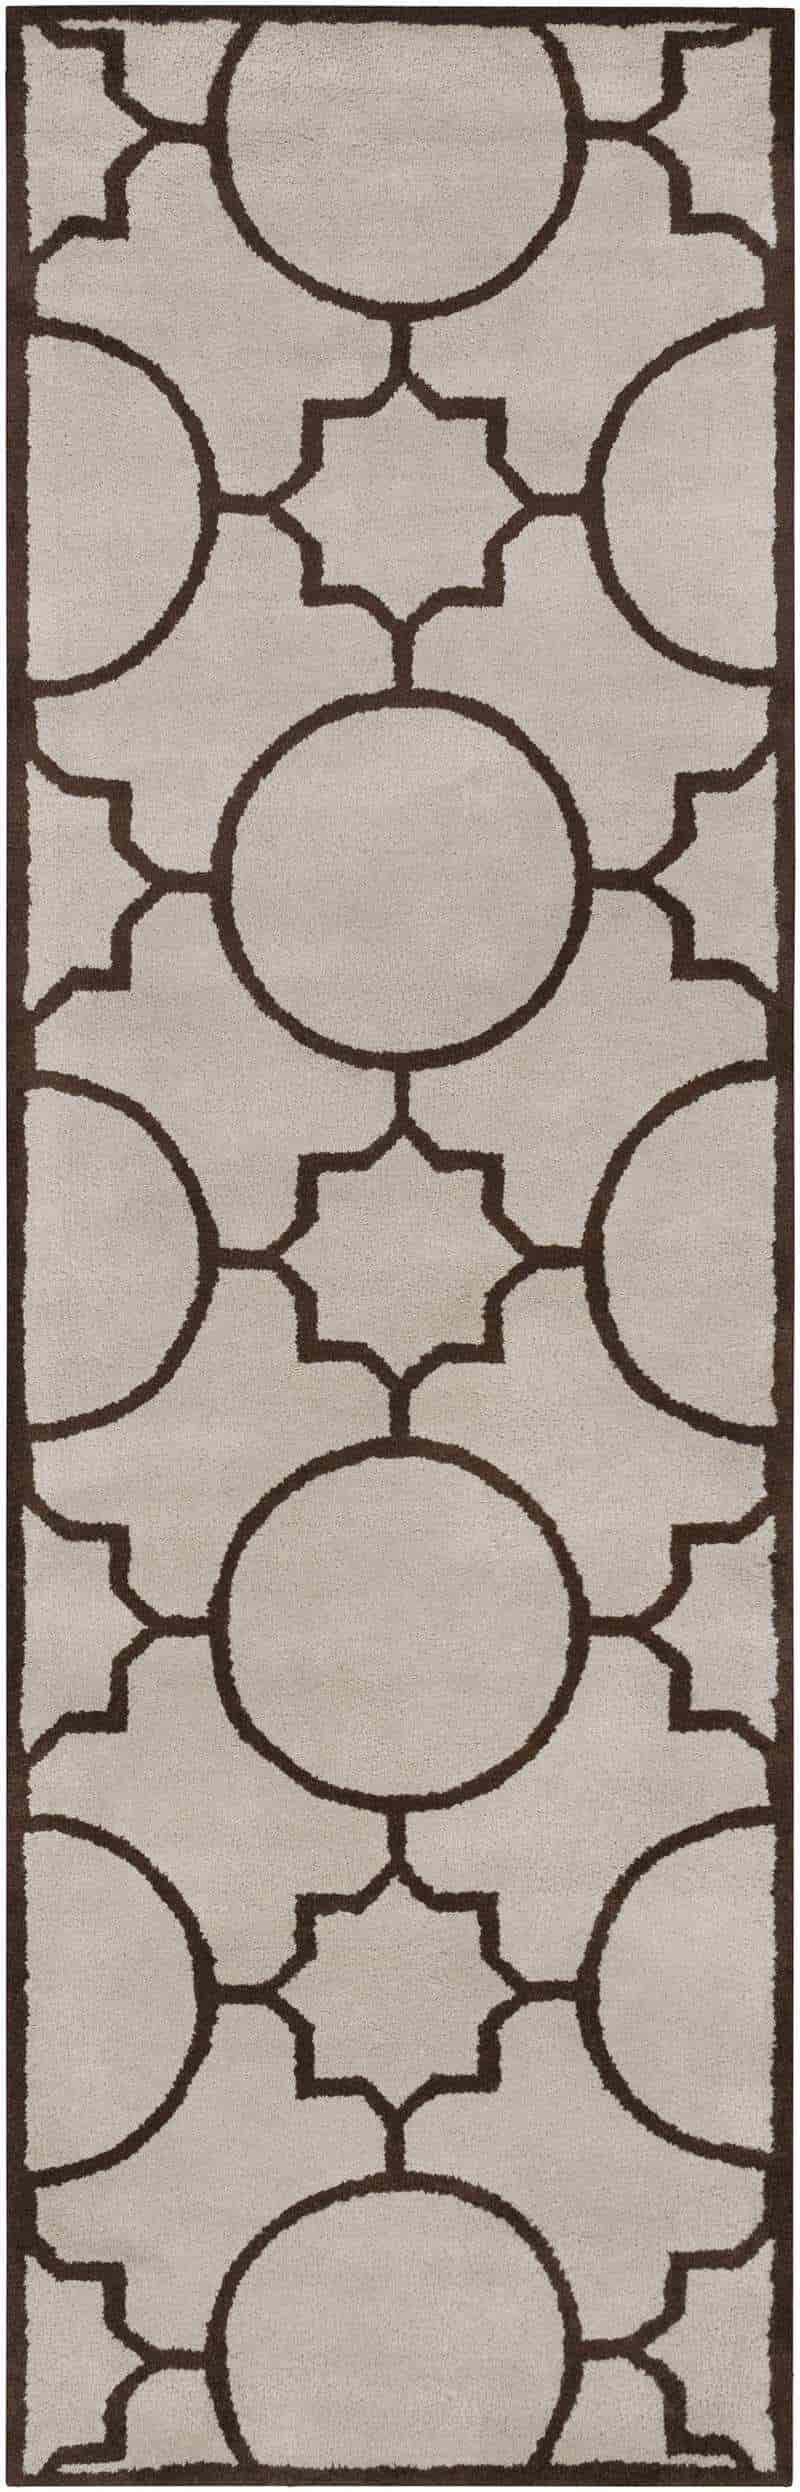 Geometric Patterned Wool Rug